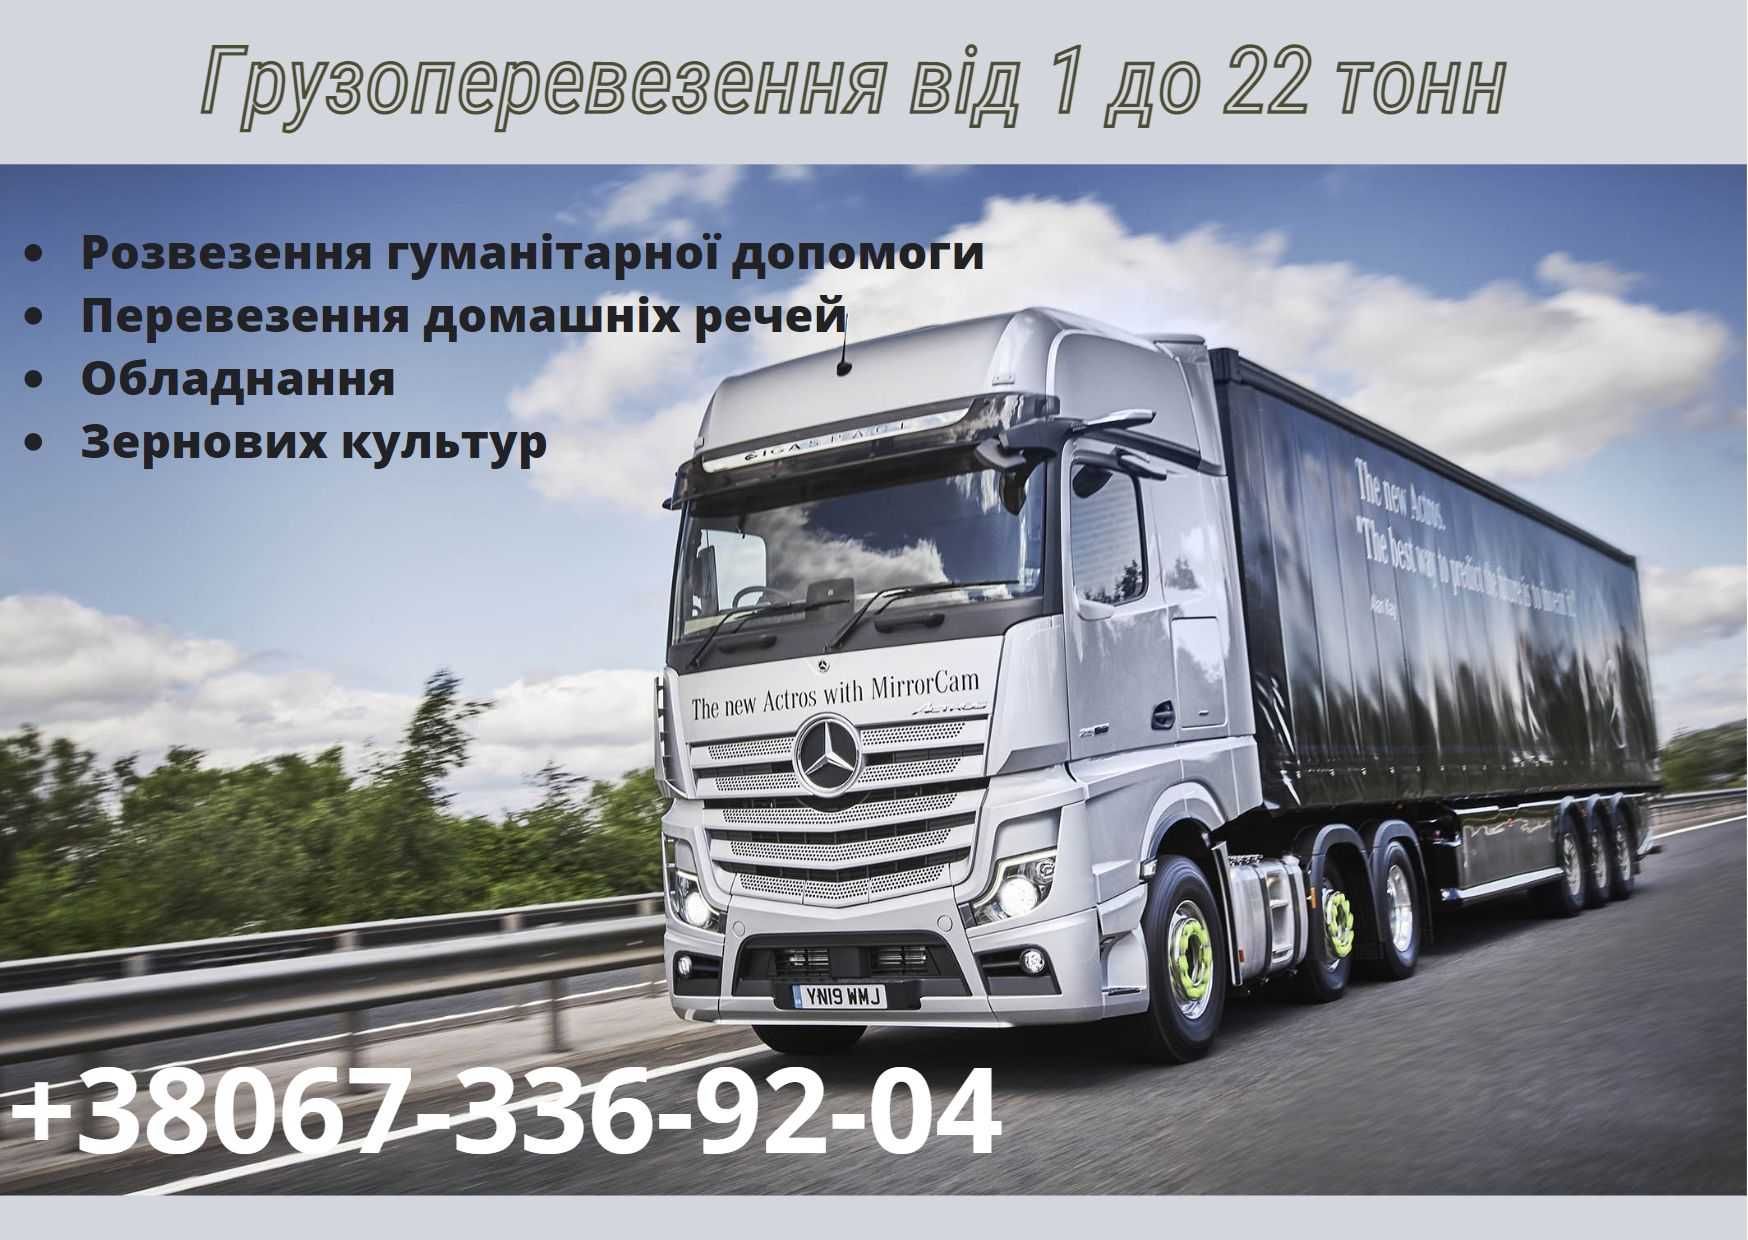 Перевозка Киев-Днепр, Днепр-Киев,догруз от 200 кг,цена в одну сторону